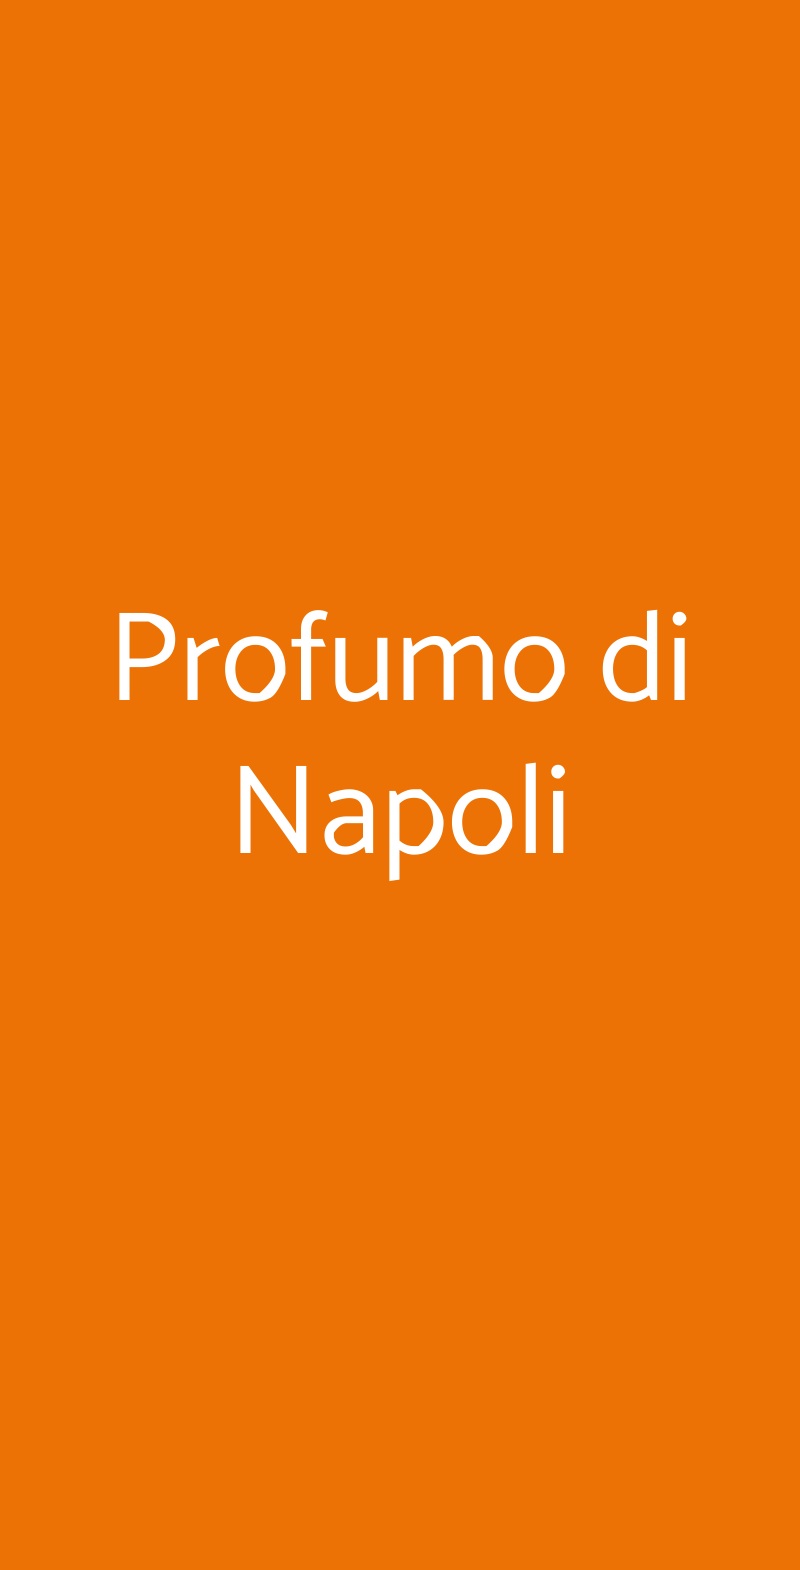 Profumo di Napoli Reggio Emilia menù 1 pagina